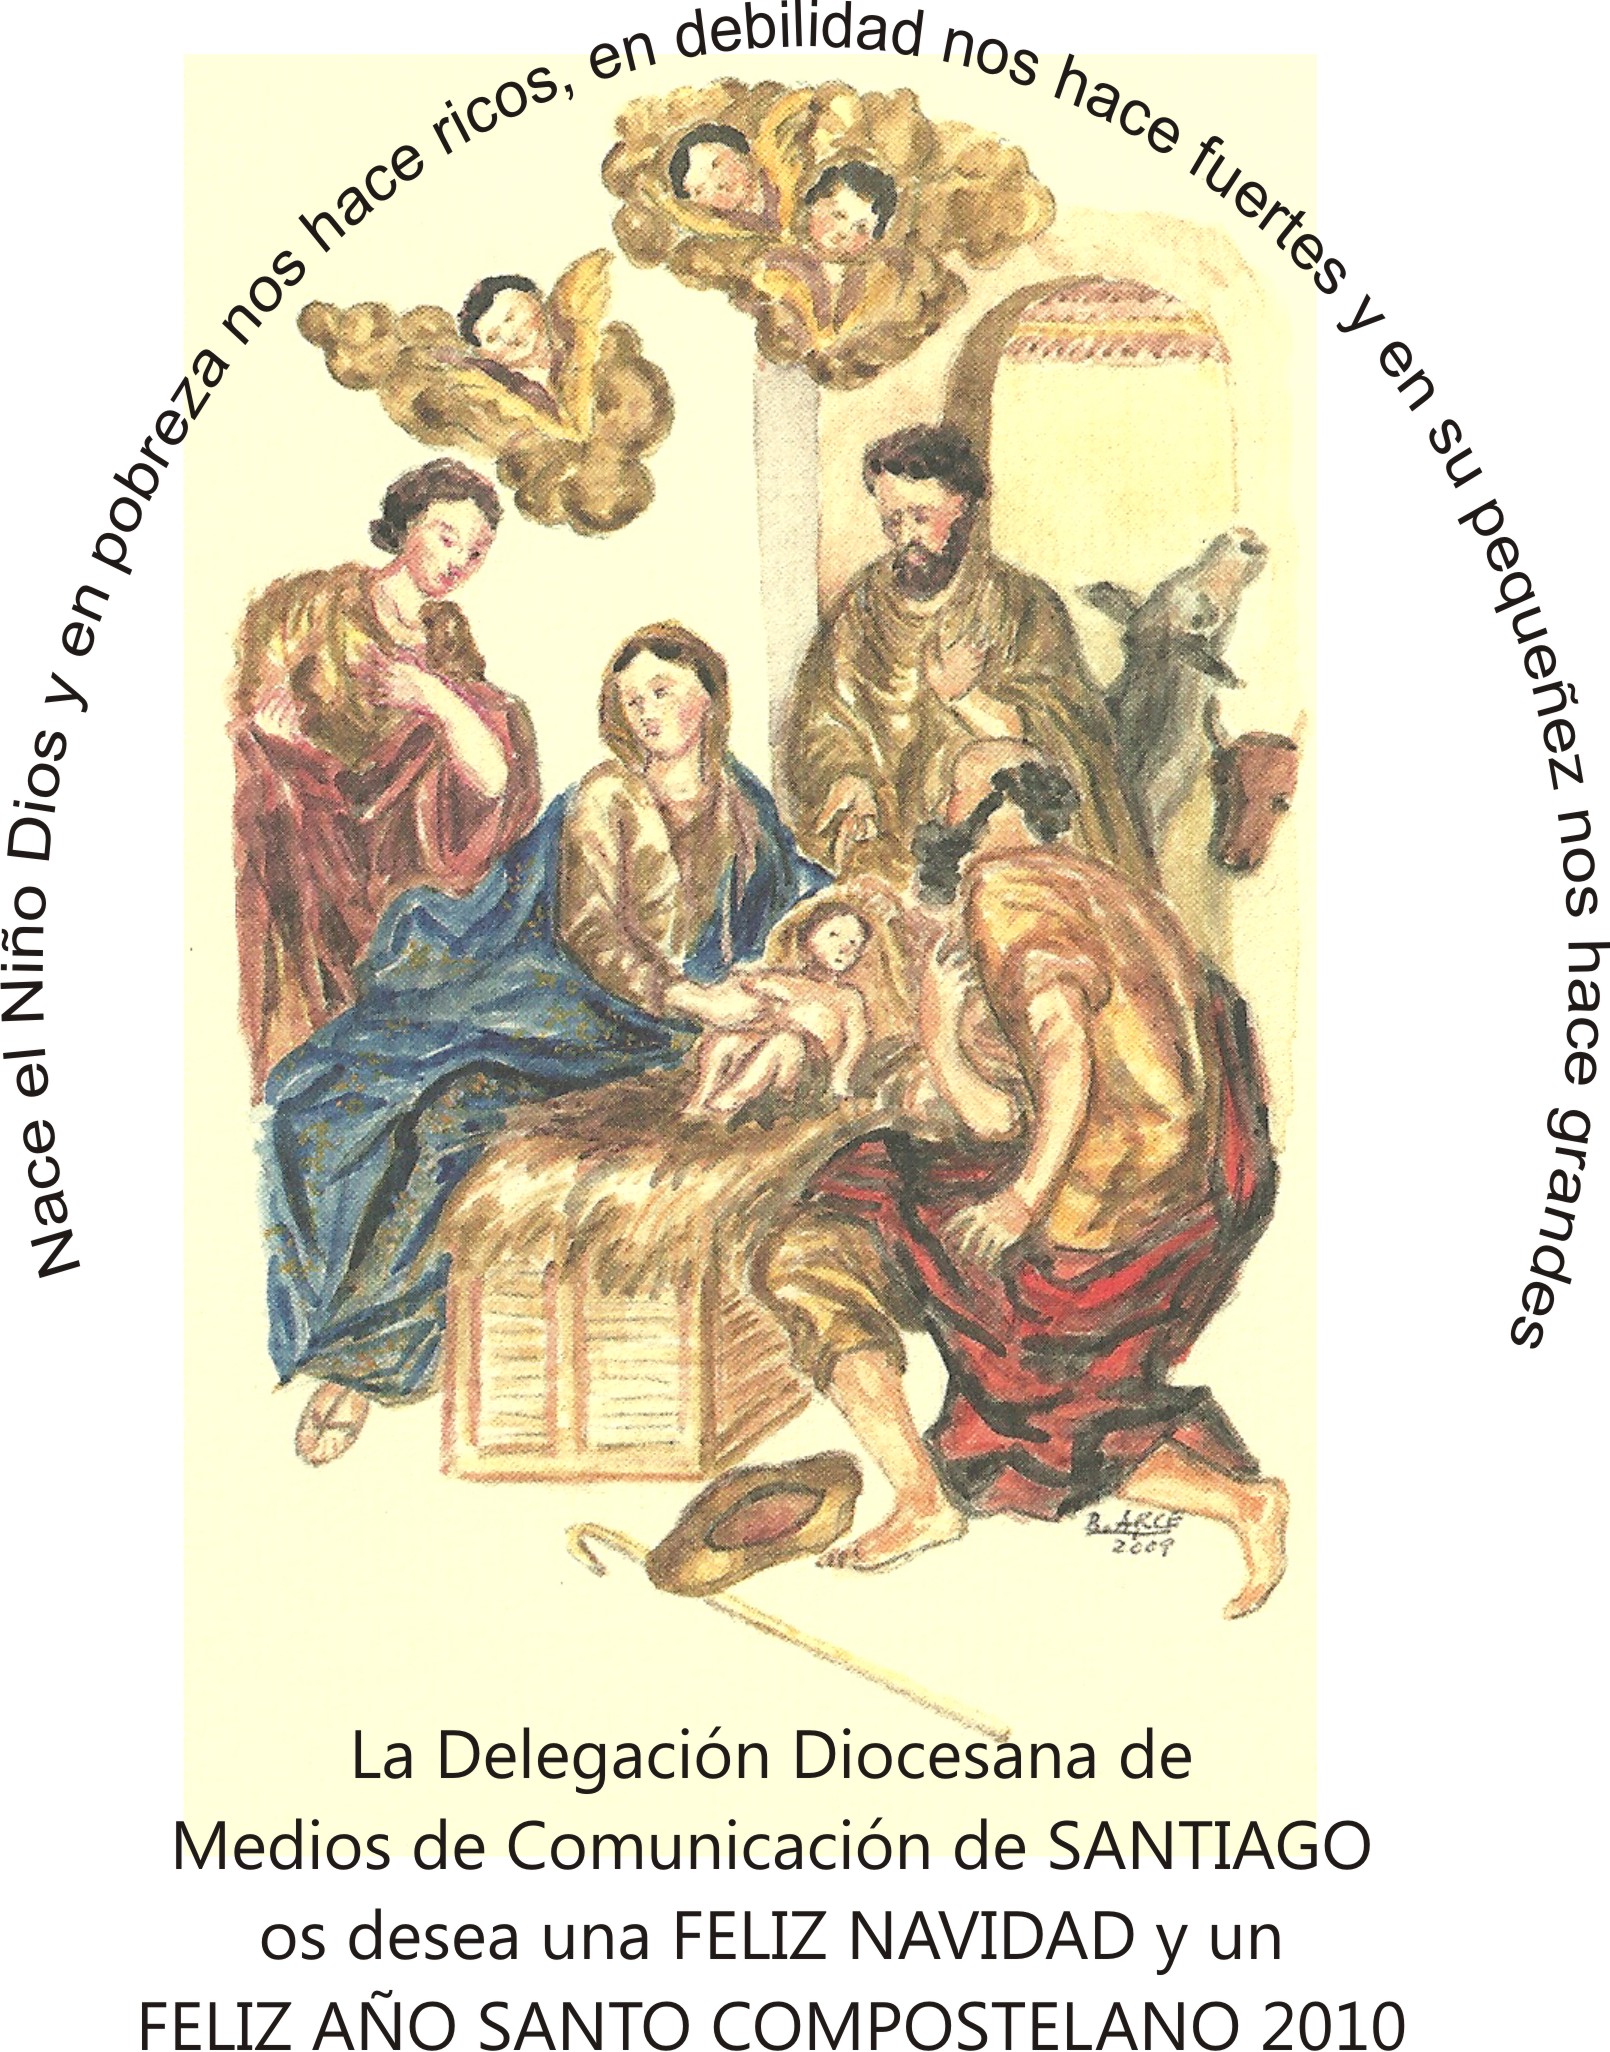 Felicitación da delegación diocesana de medios de comunicación de Santiago 